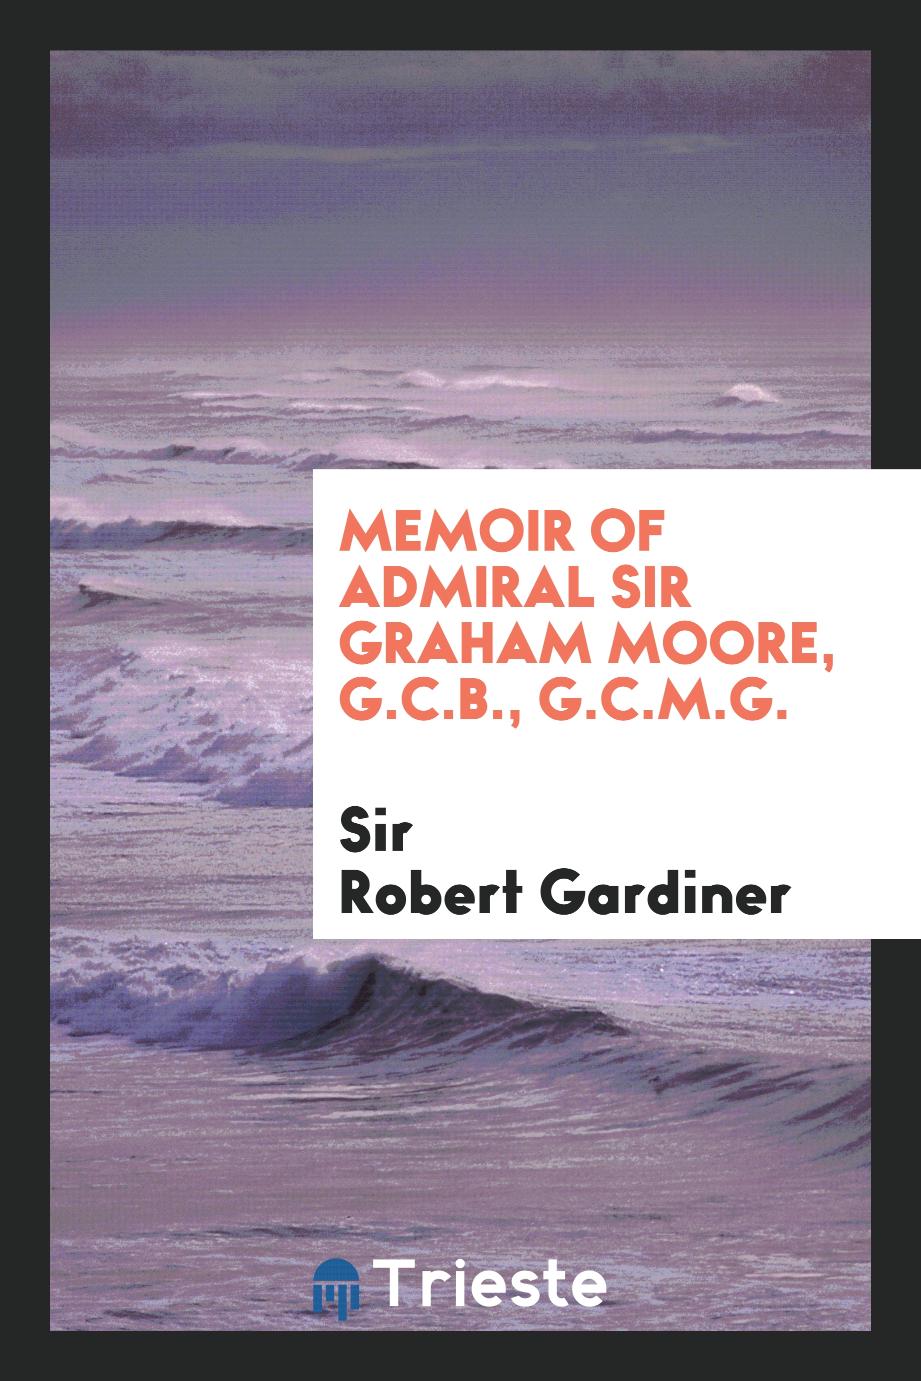 Memoir of Admiral Sir Graham Moore, G.C.B., G.C.M.G.